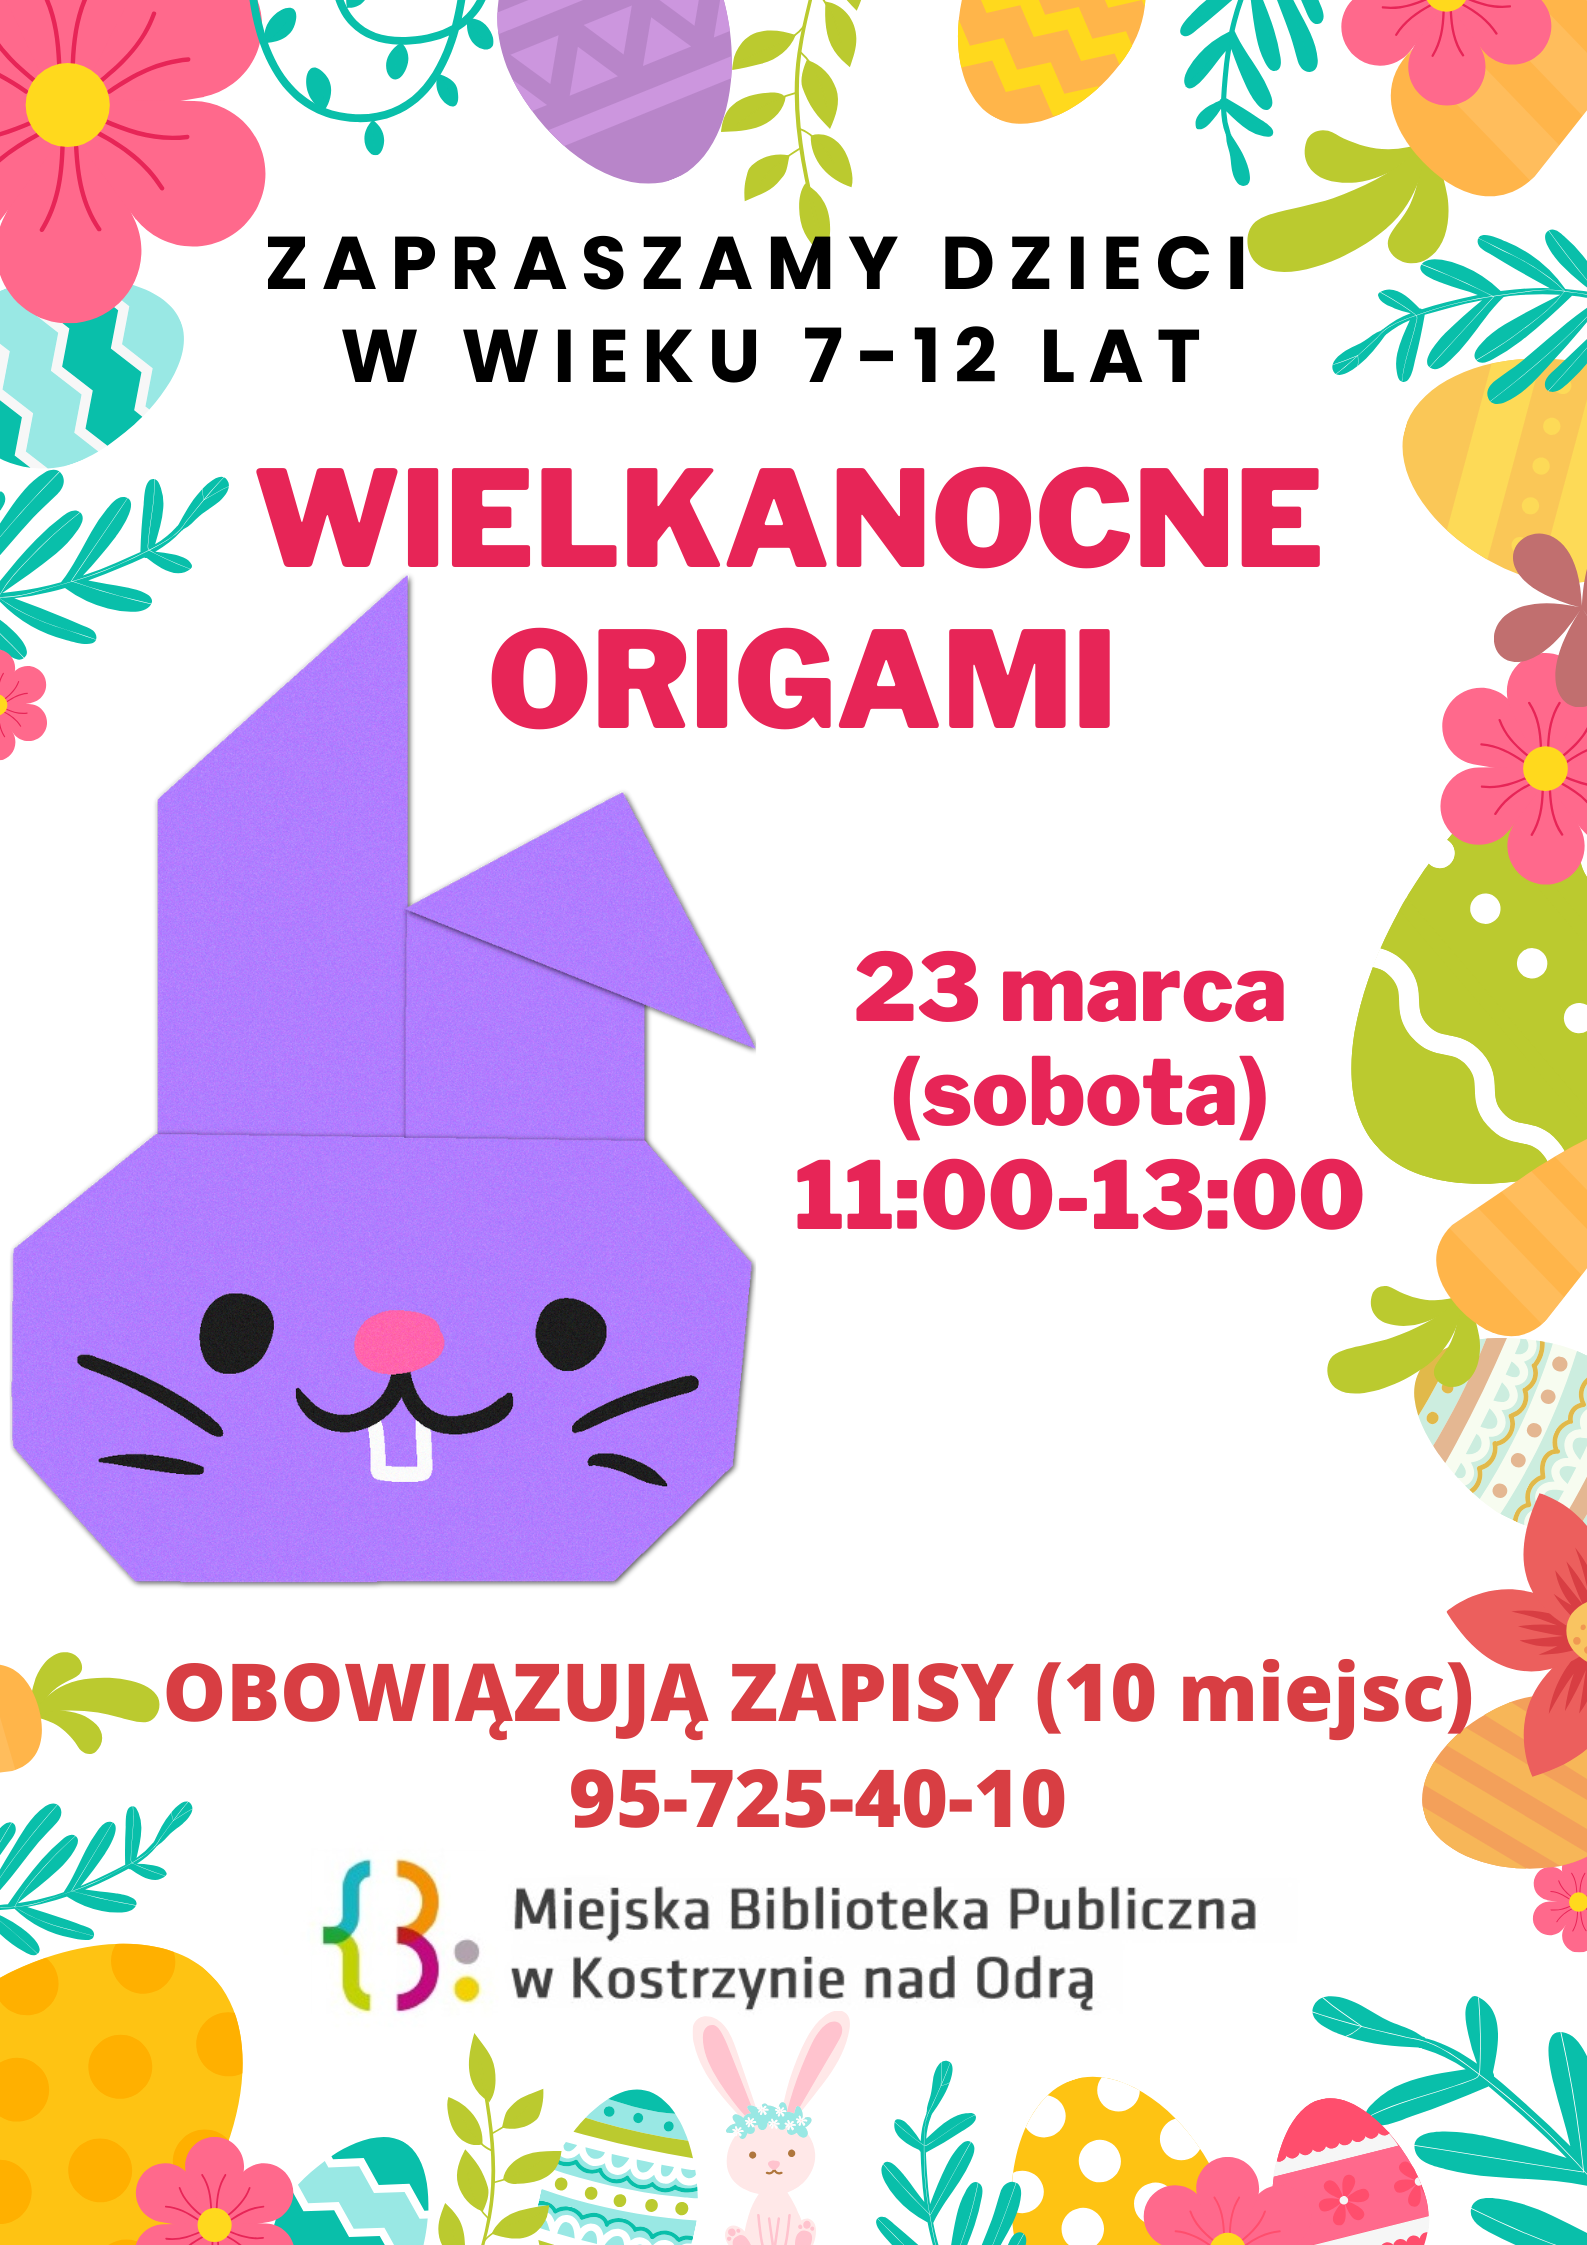 plakat informacyjny dot. zapisów na Wielkanocne origami